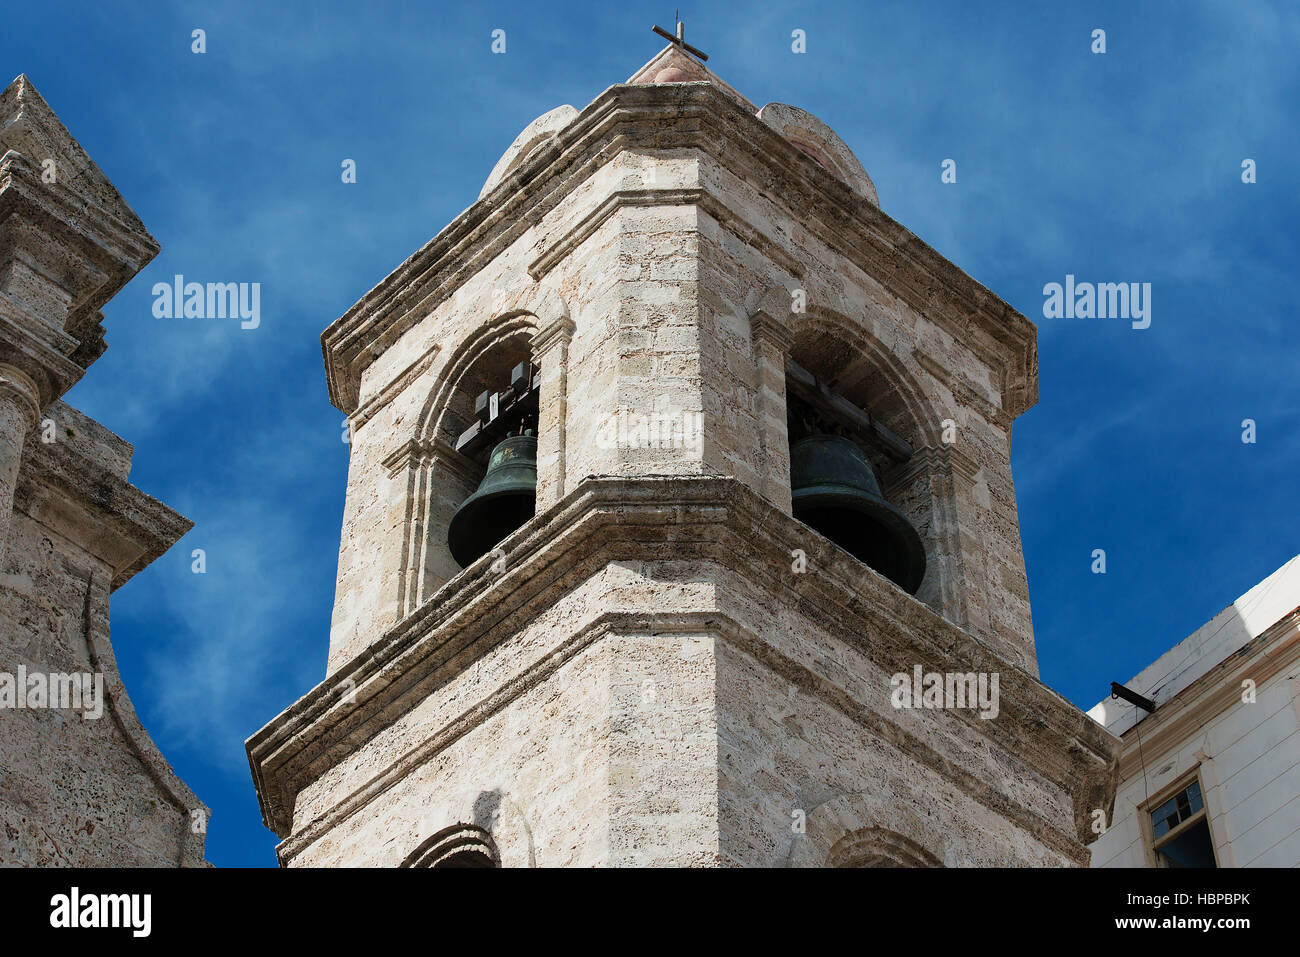 Cathédrale de La Havane, Cuba Banque D'Images